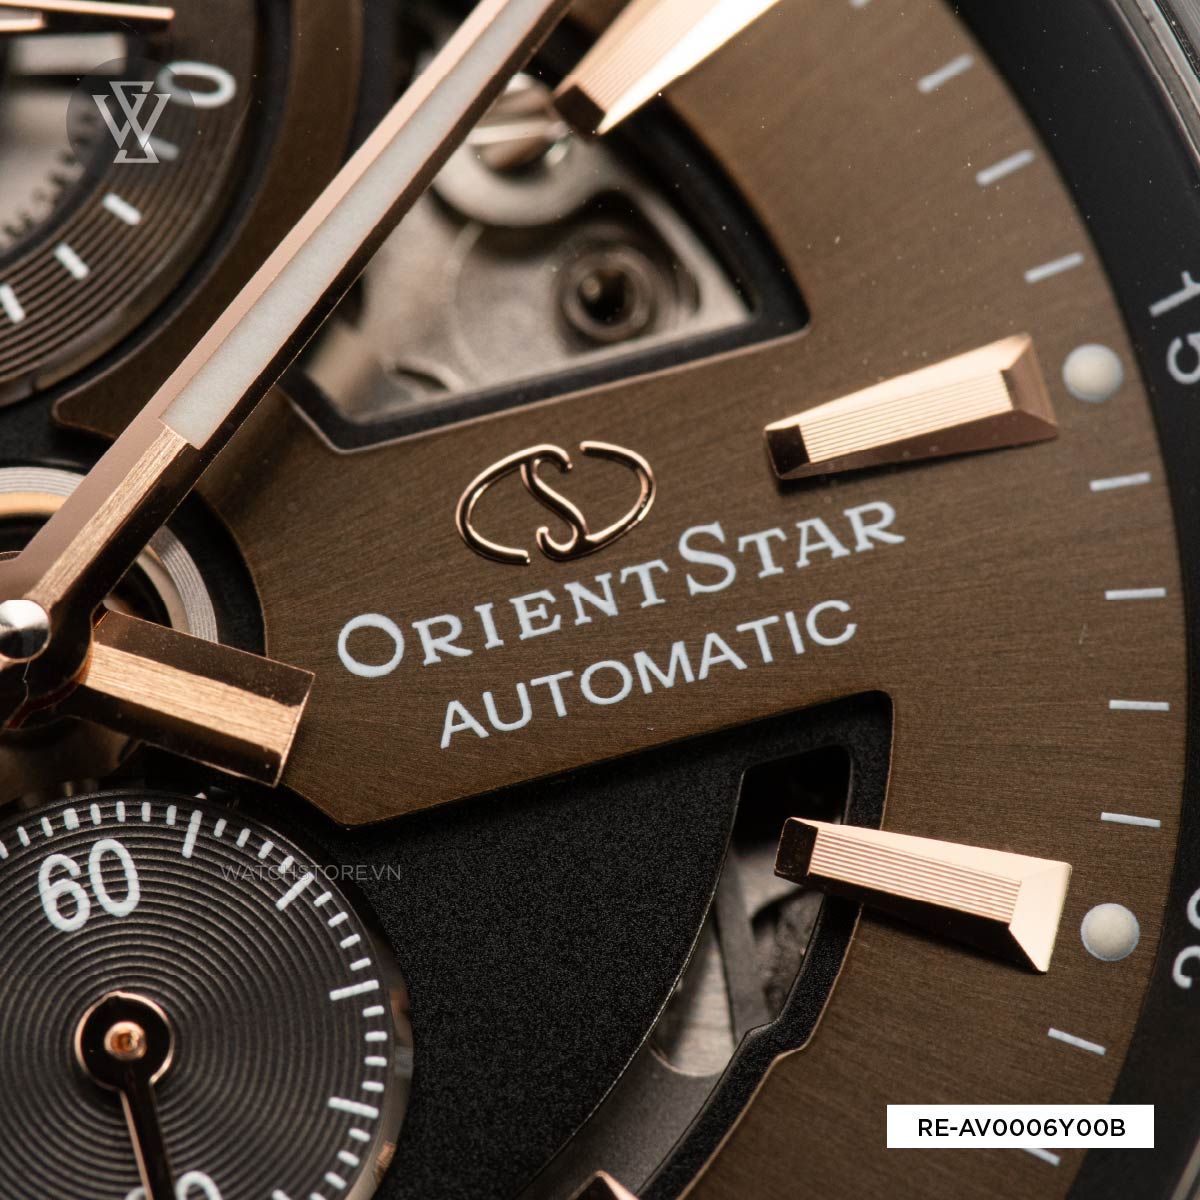 Đánh giá đồng hồ Orient Star liệu có 